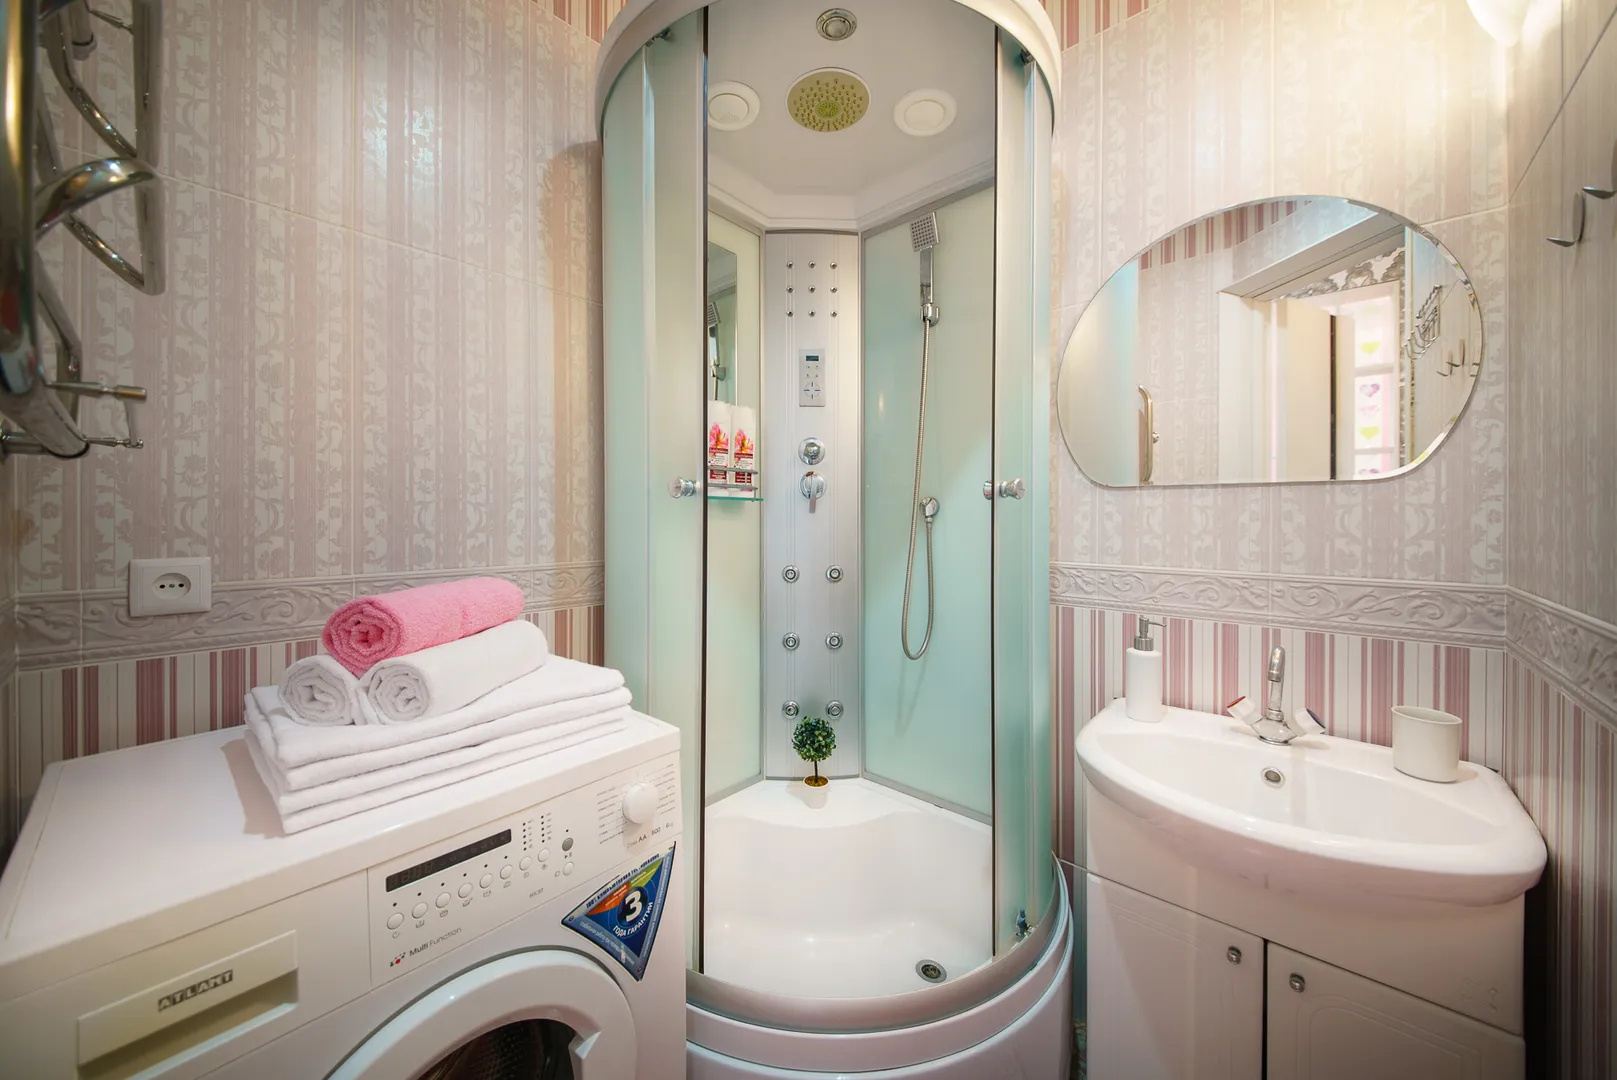 Ванная комната, свежие полотенца, душевая кабина, стиральная машина